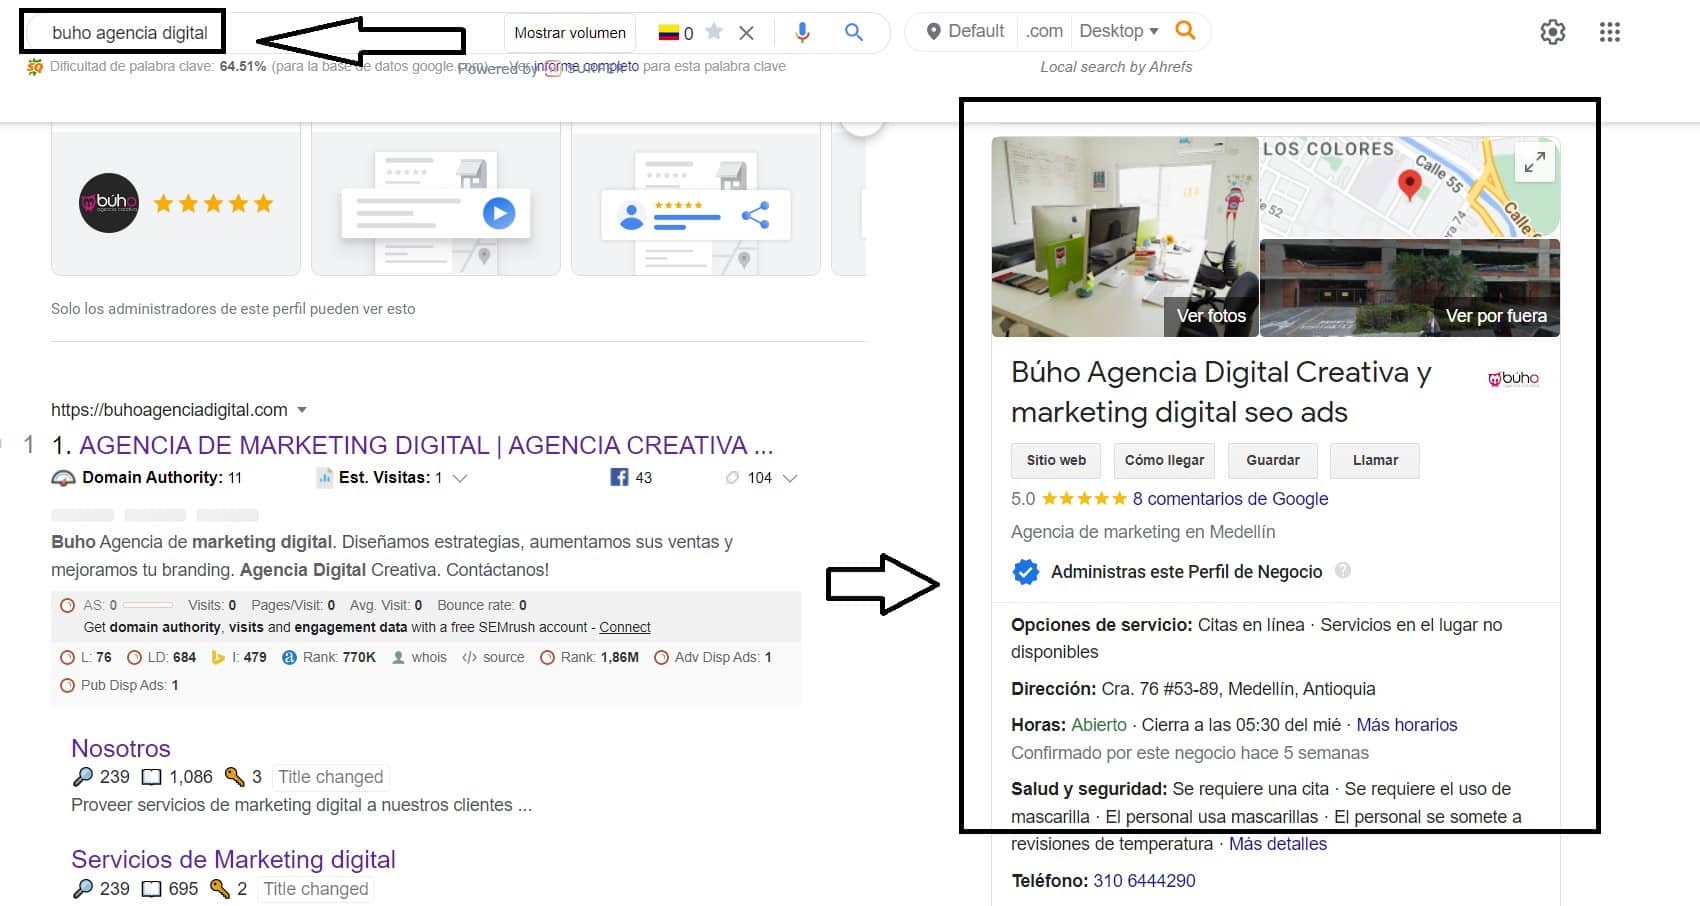 google my business de buho agencia digital